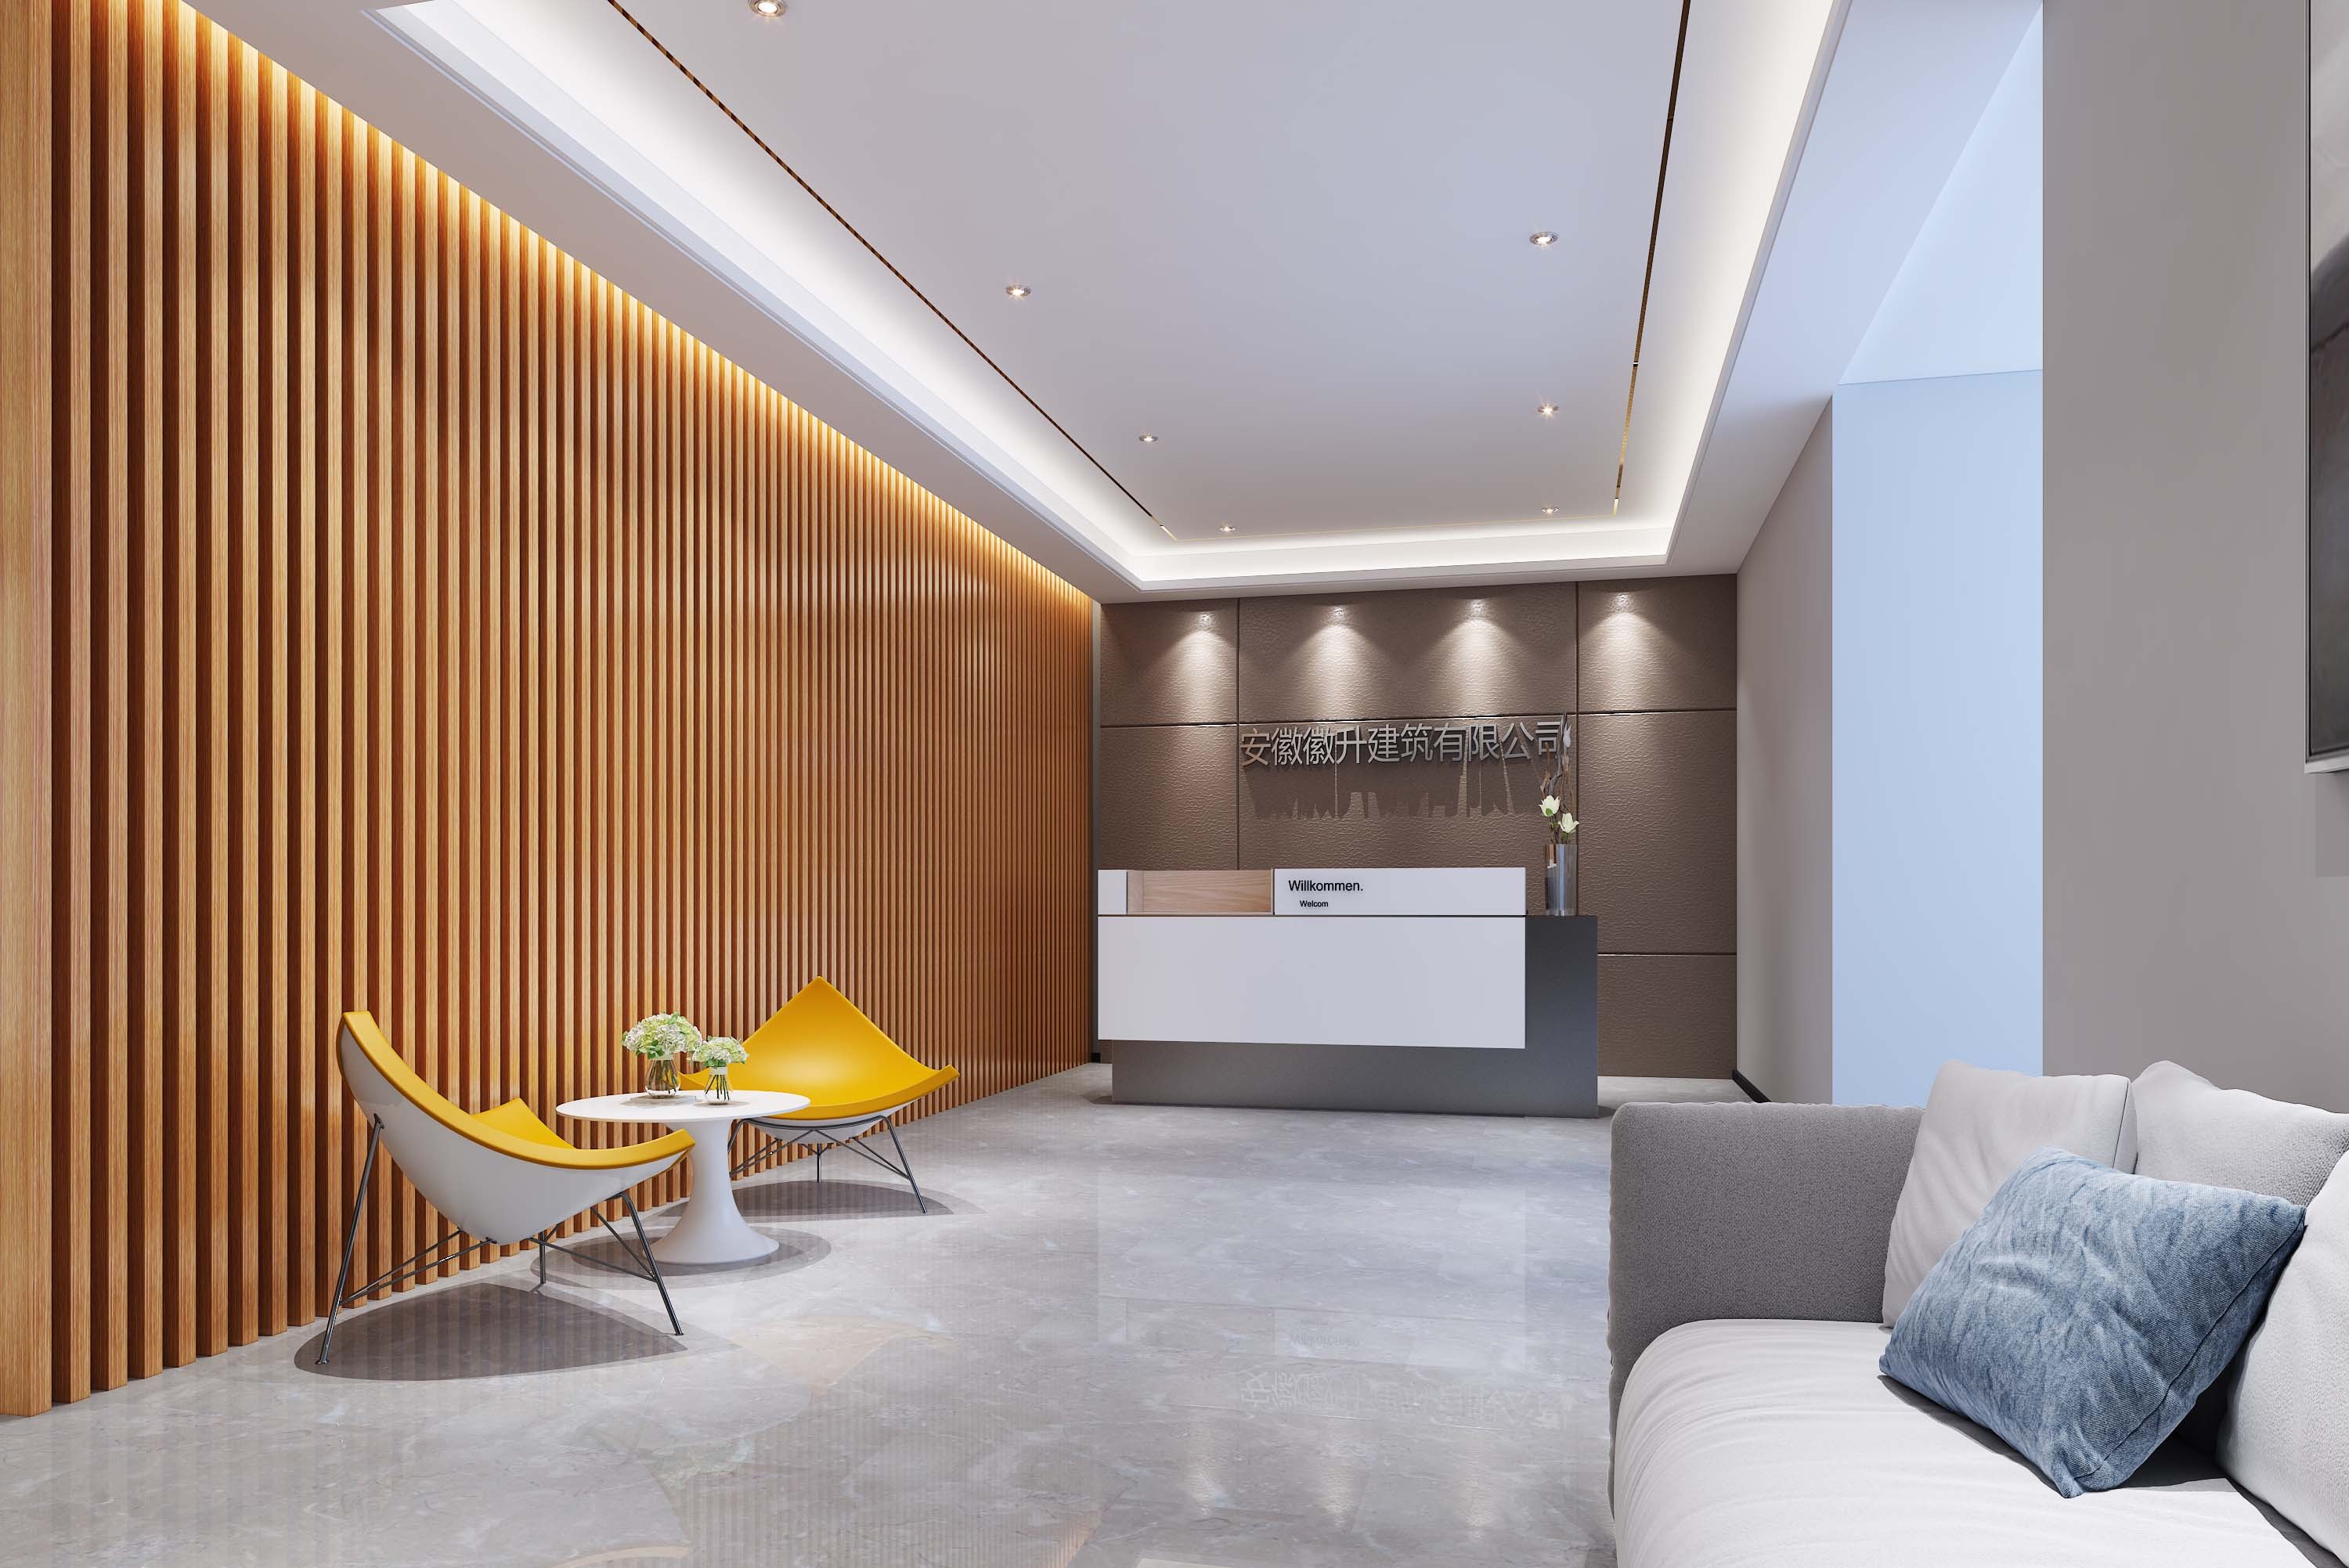 新中式酒店大堂 - 效果图交流区-建E室内设计网